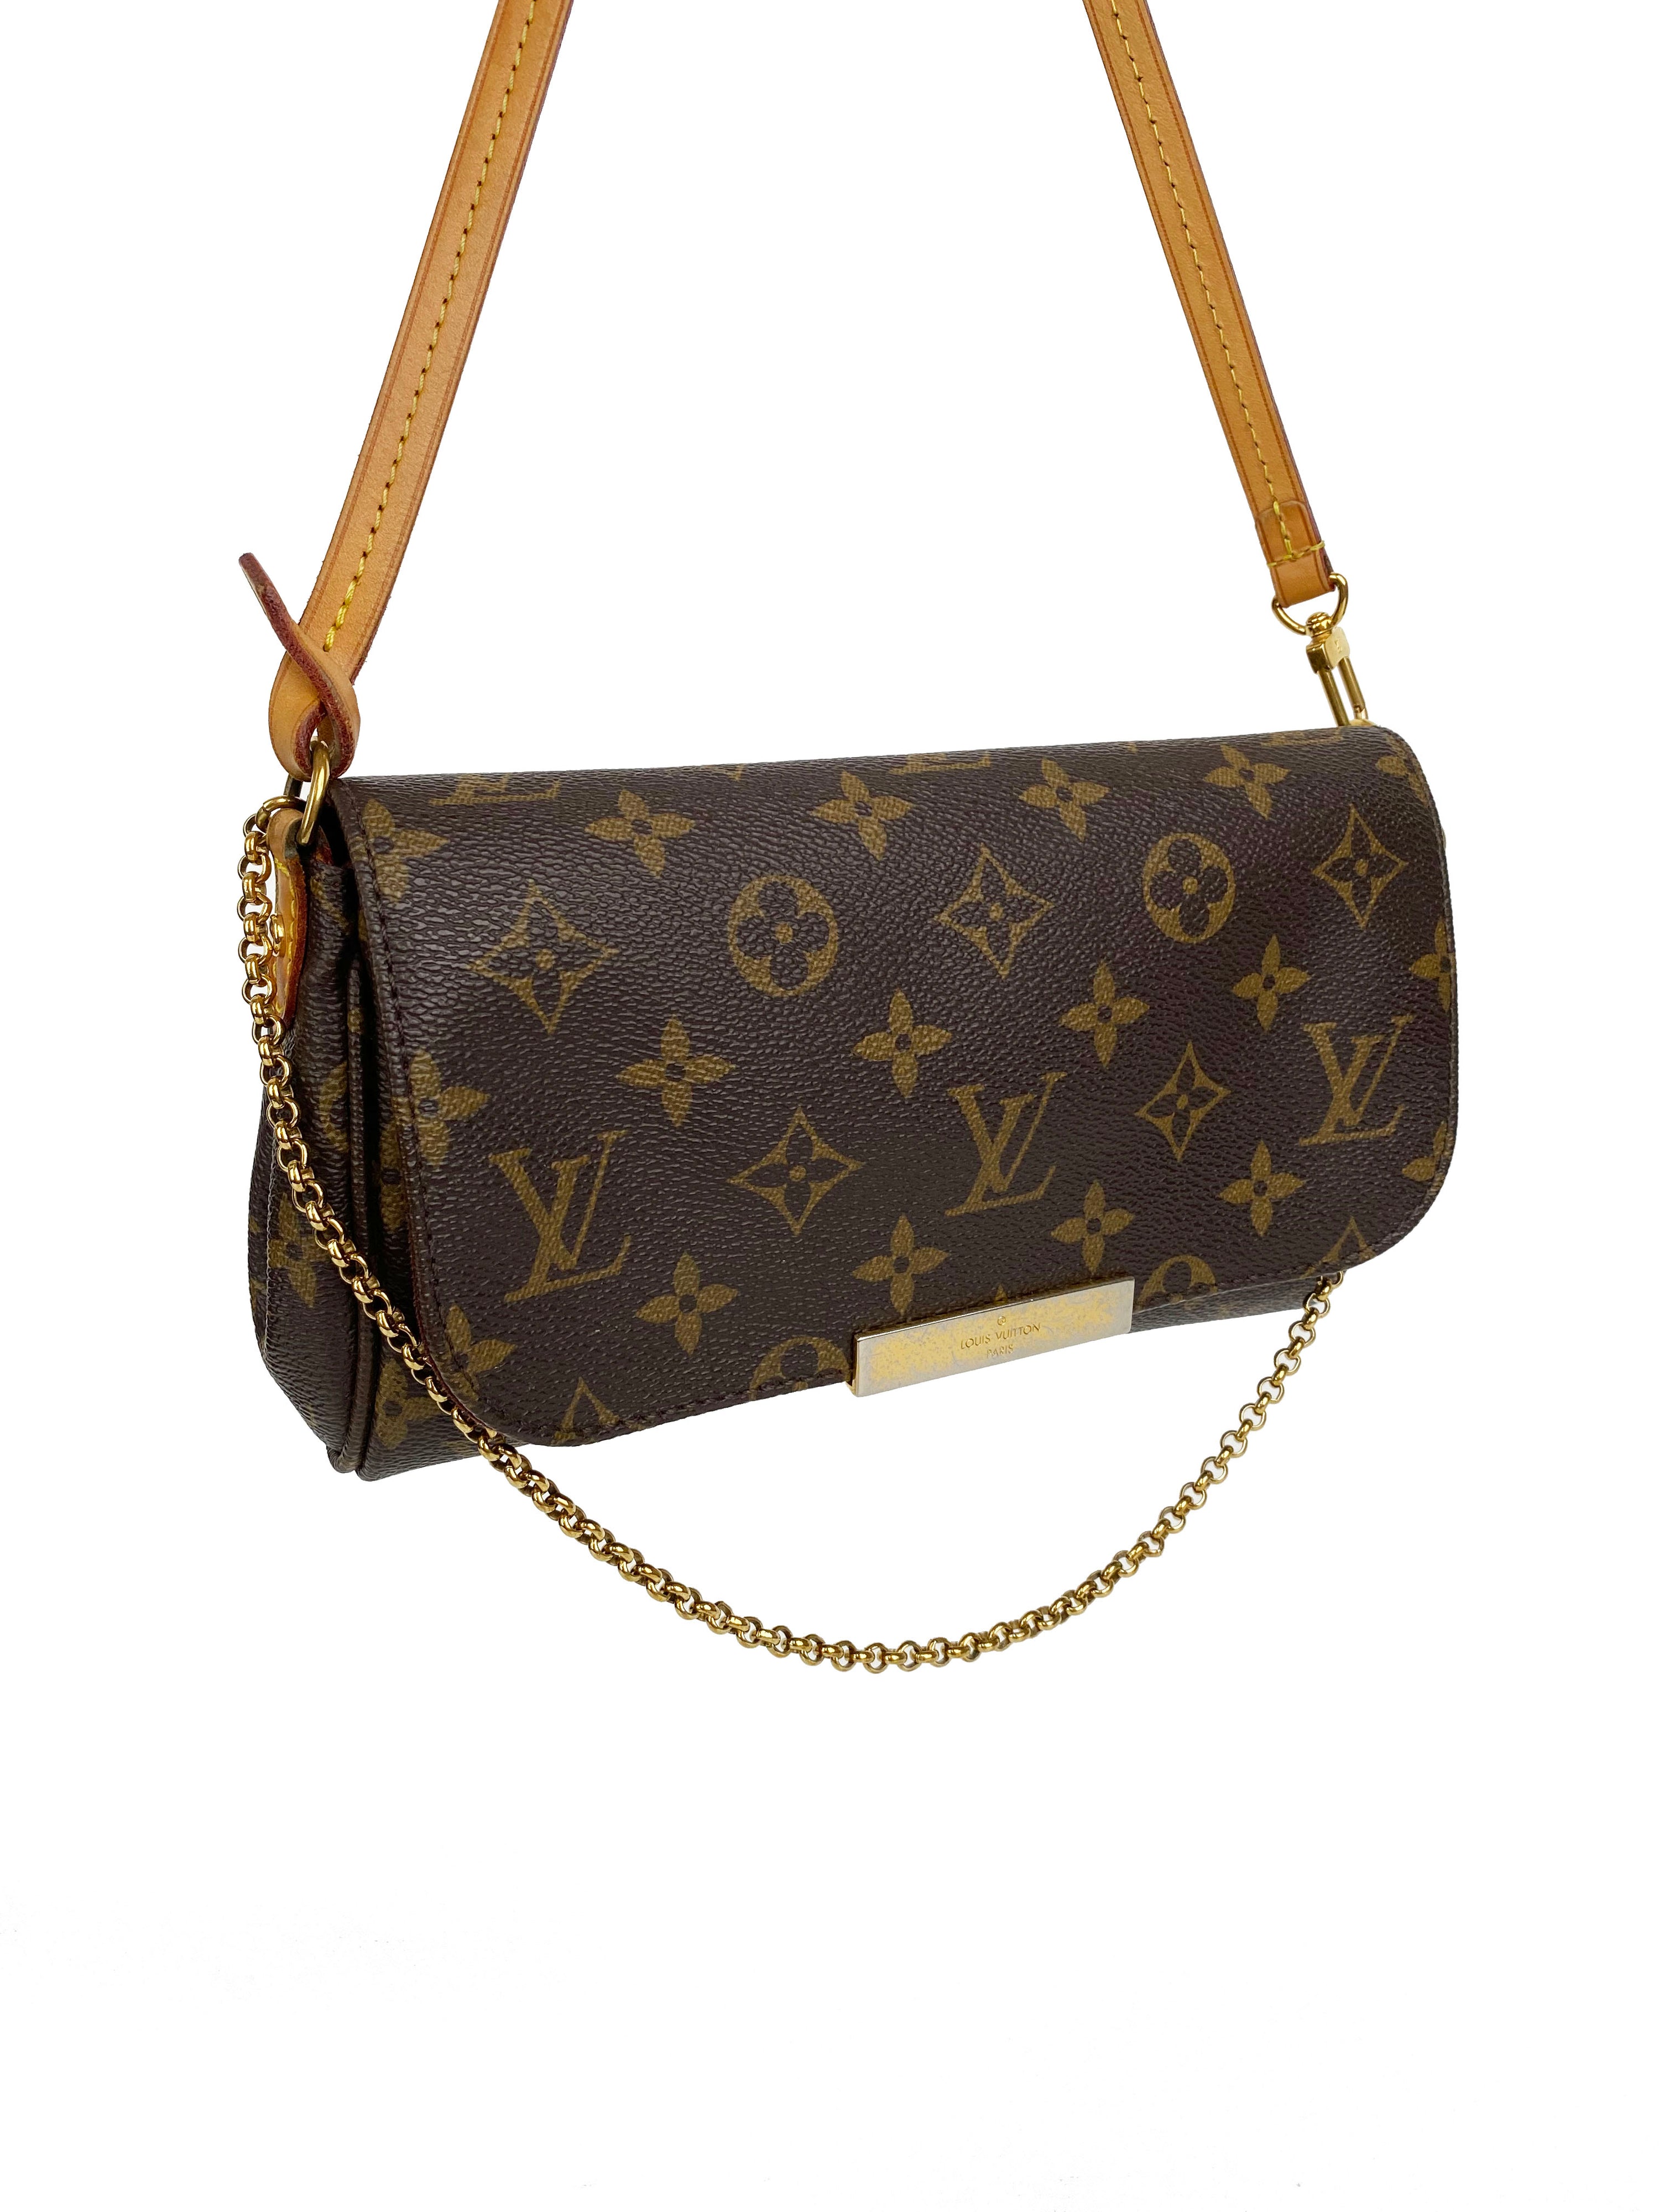 Louis Vuitton Favourite PM Bag